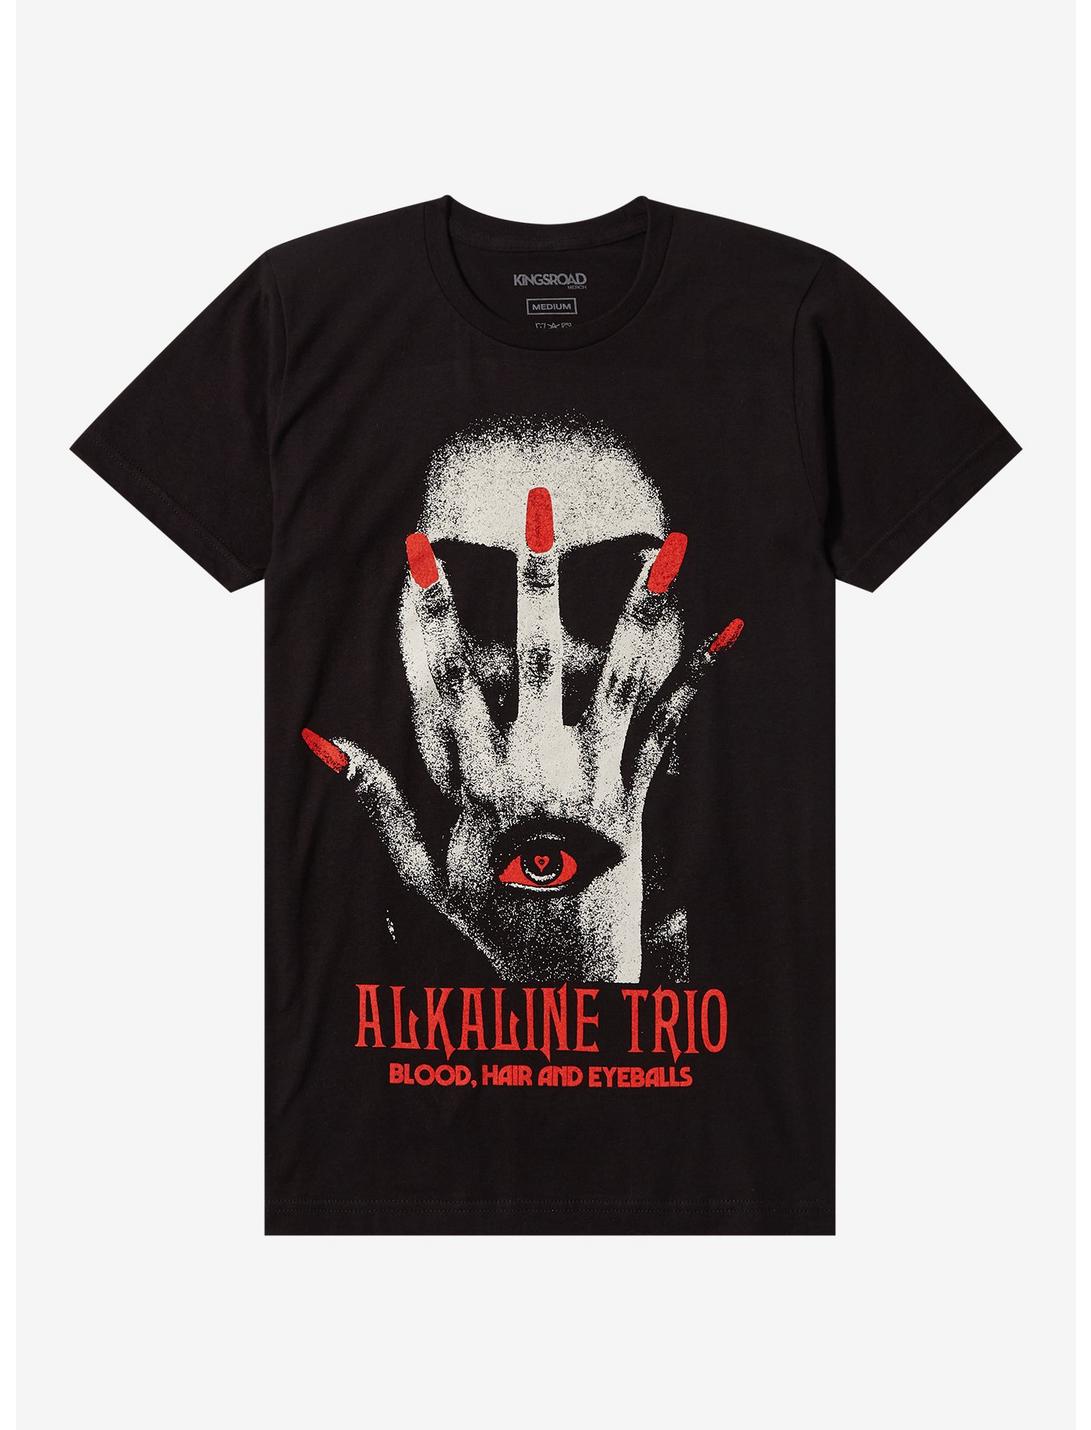 Alkaline Trio Blood Hair And Eyeballs Boyfriend Fit Girls T-Shirt, BLACK, hi-res